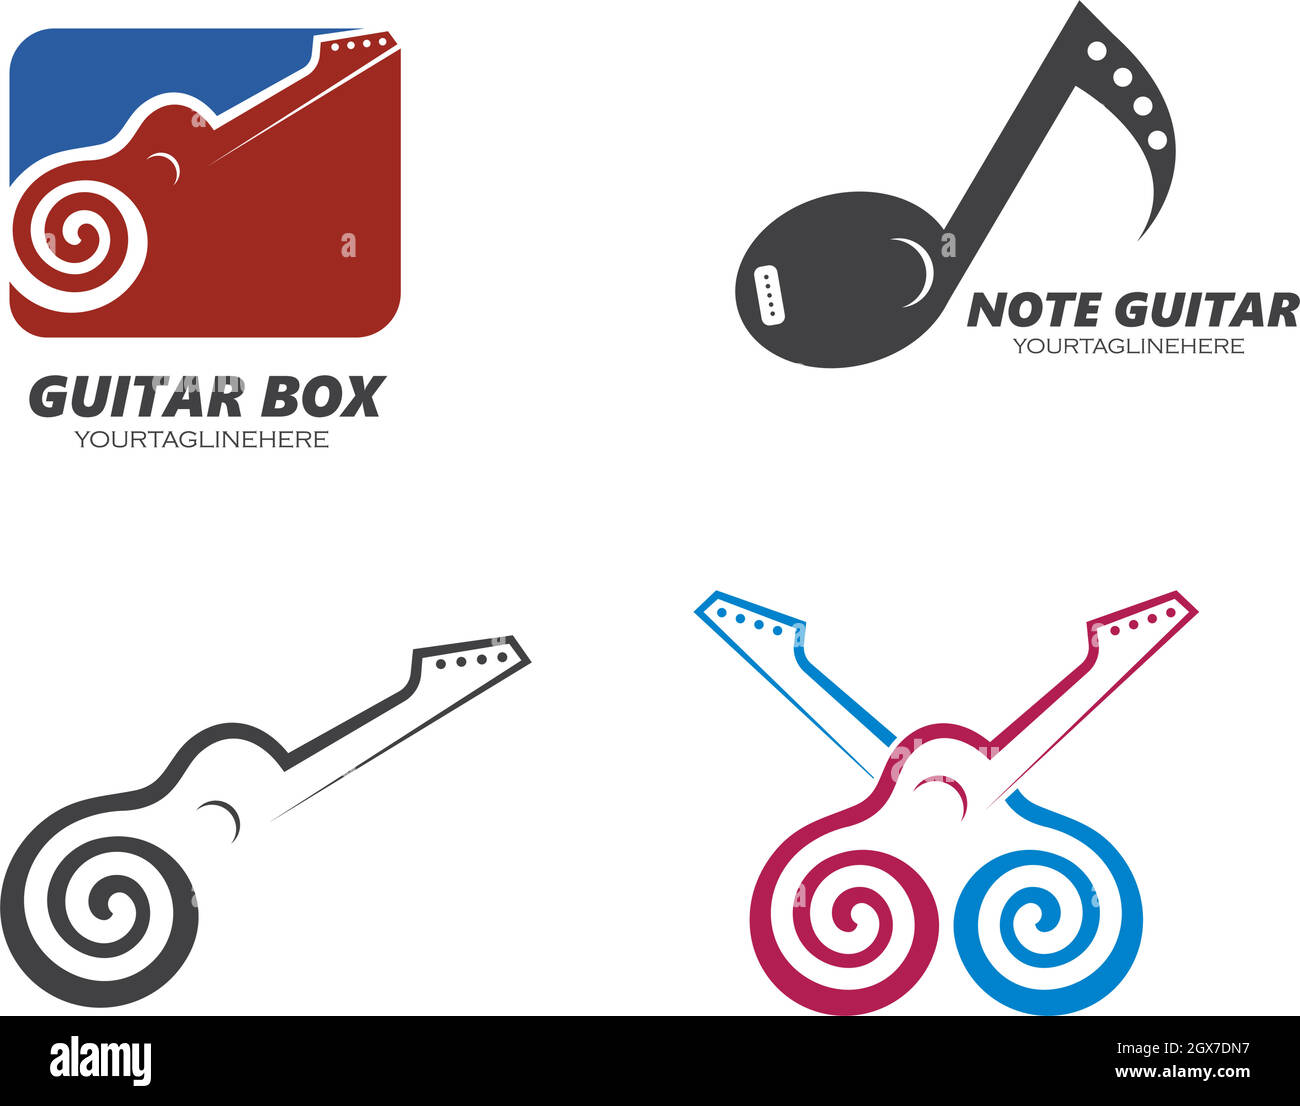 guitar icon logo vector illustration design Stock Vector